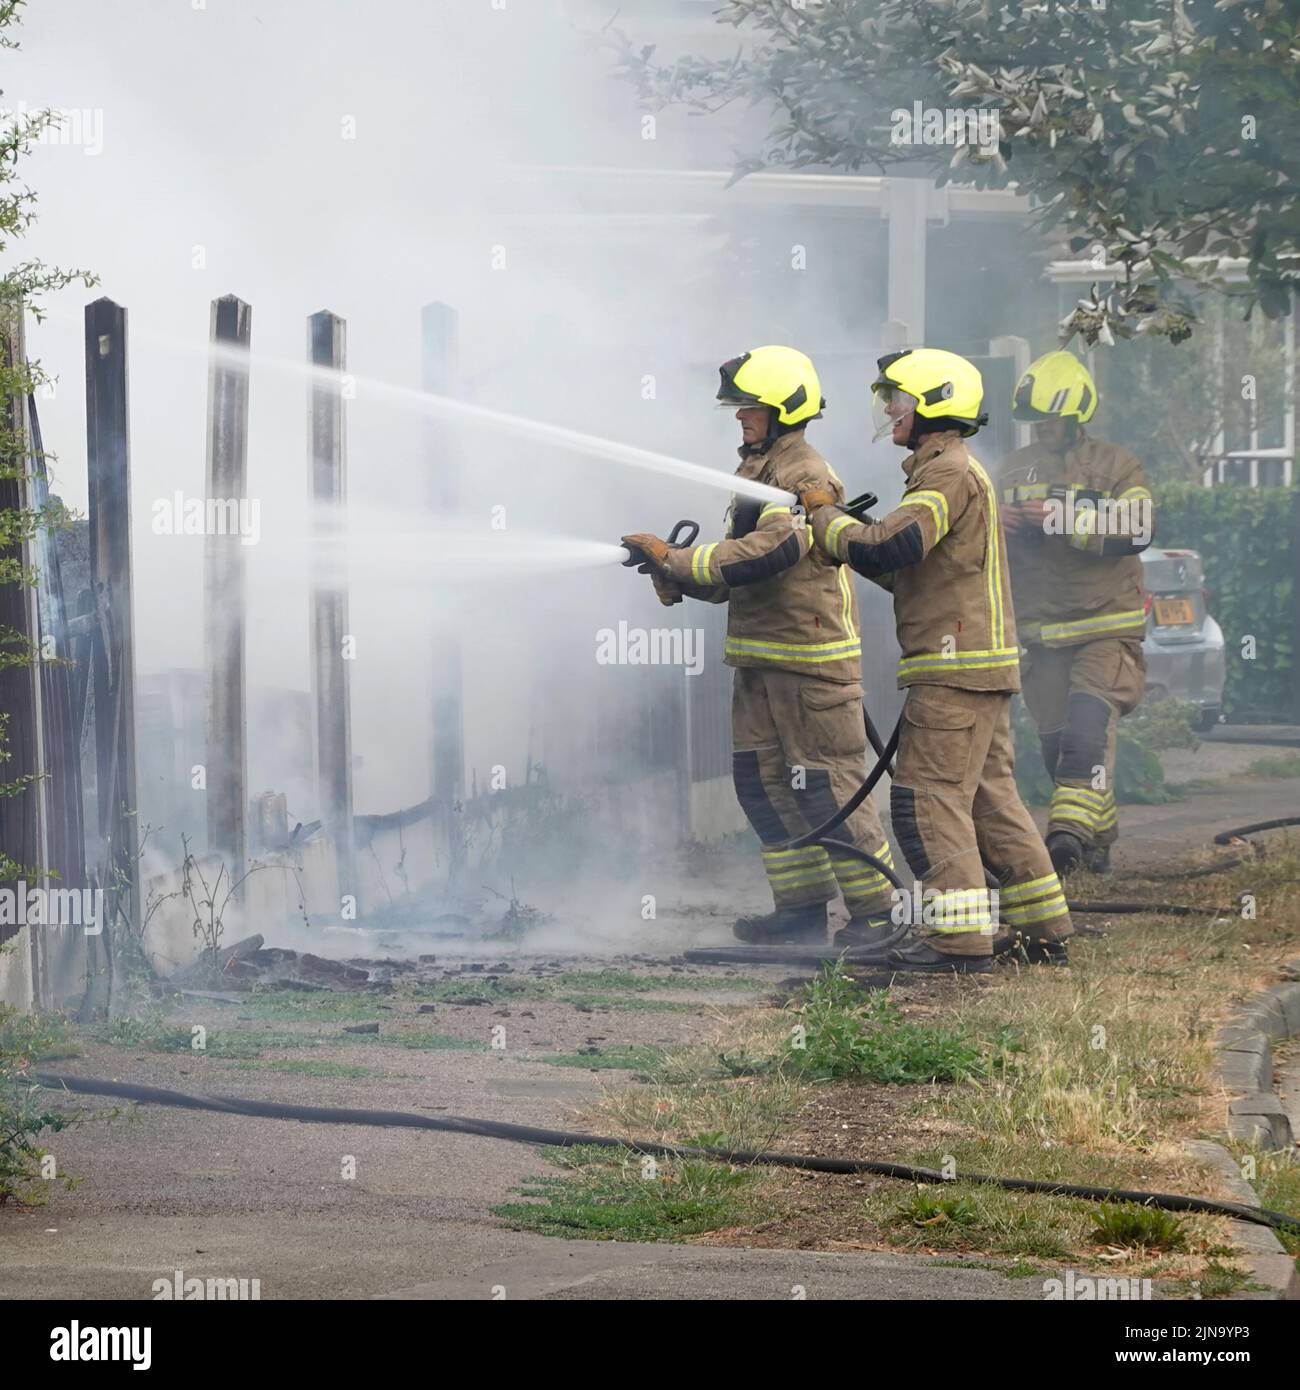 Essex Fire and Rescue Service groupe de pompiers en vêtements de protection incendie de maison de travail dangereux et dangereux travaillant avec des tuyaux d'eau Angleterre Royaume-Uni Banque D'Images